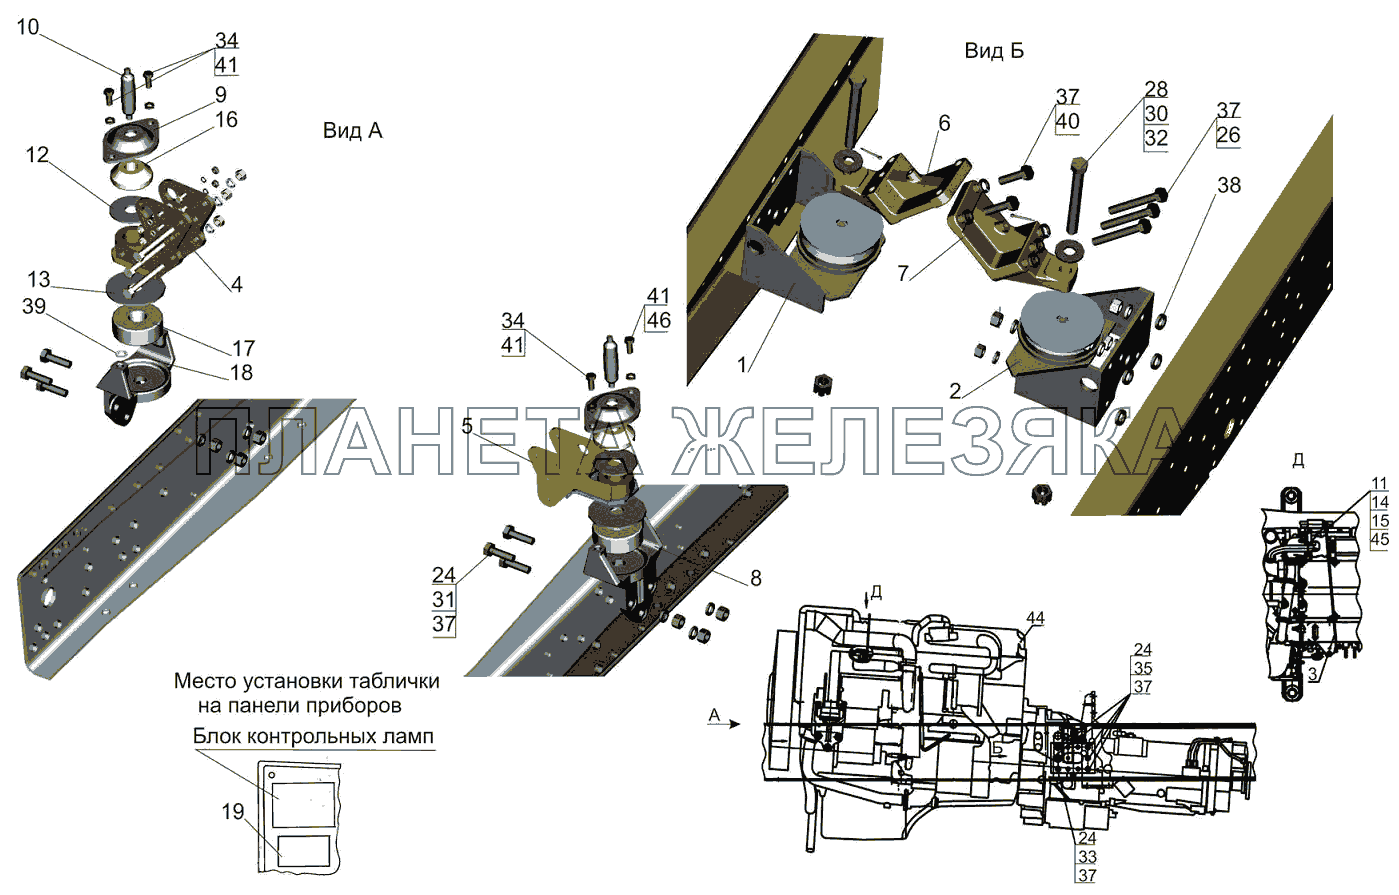 Крепление двигателя 6501B9-1001002-020, (030),(200),(210),(220),(230) МАЗ-6501B9